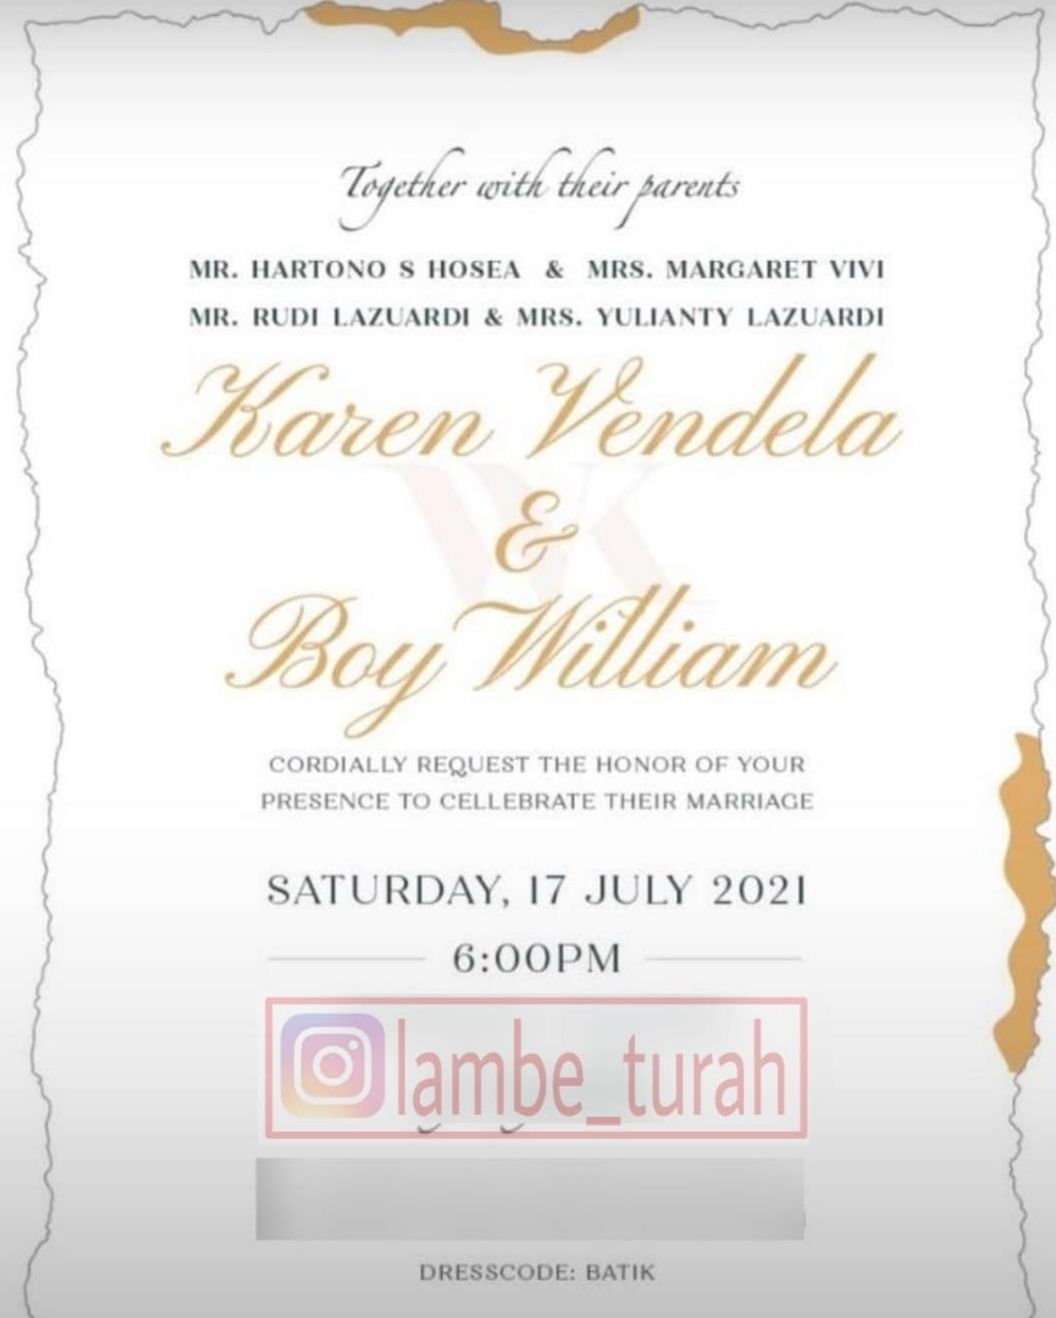 Undangan pernikahan Boy William dan Karen Vendella./Instagram.com